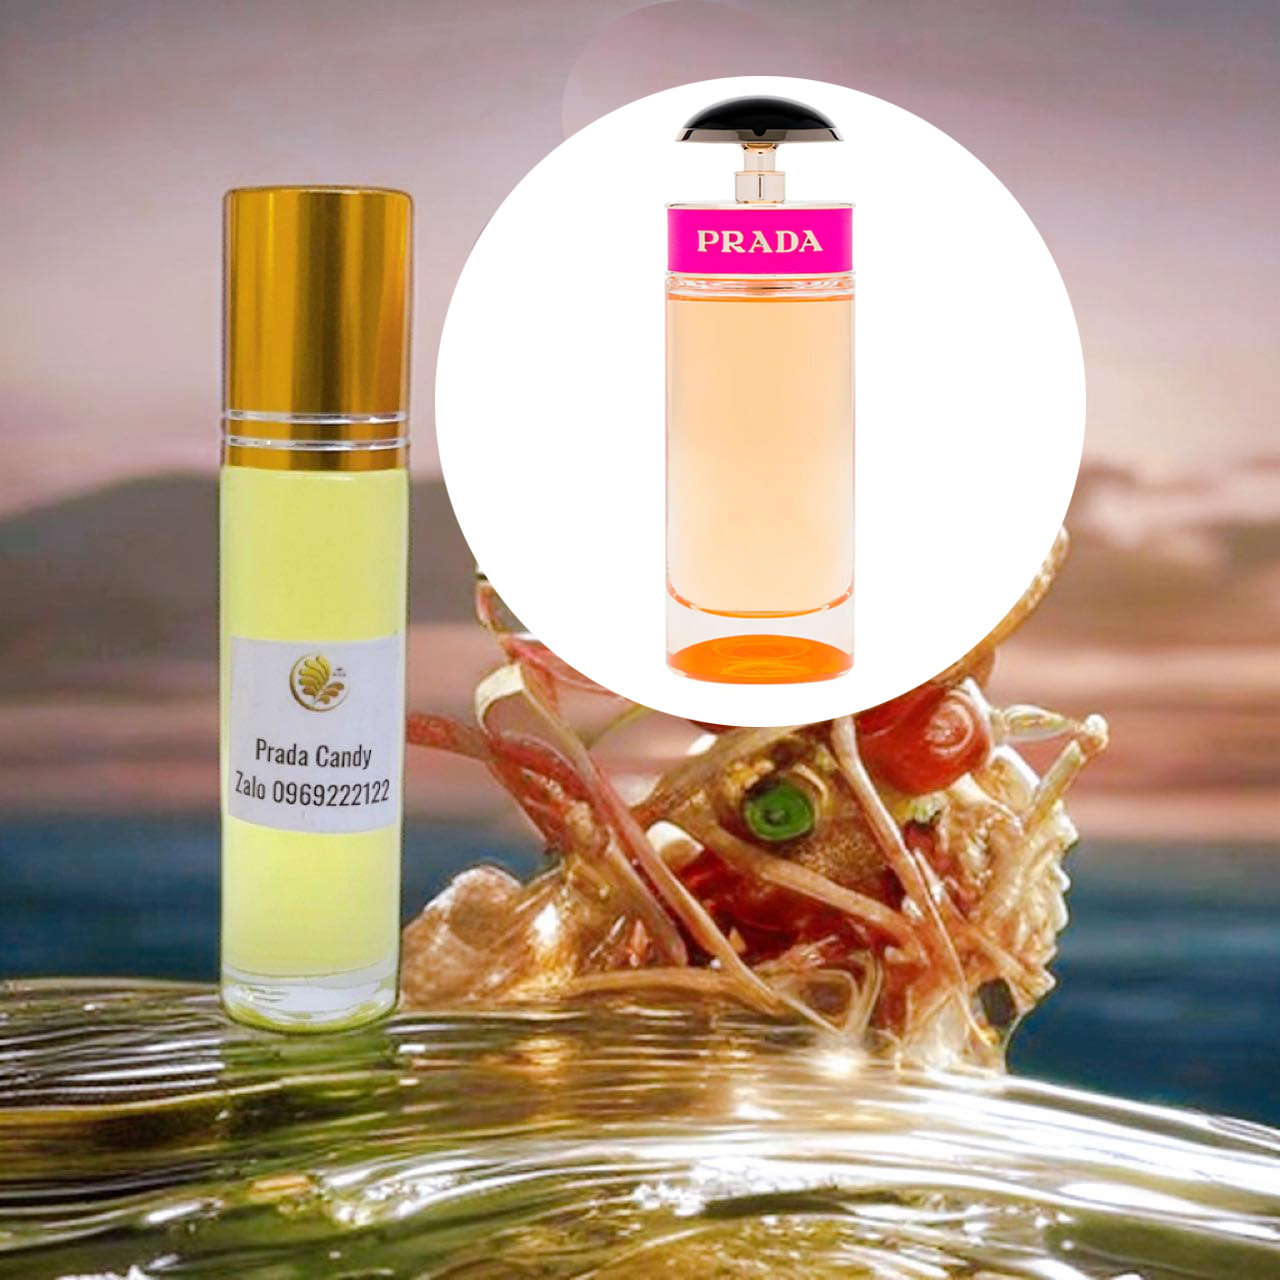 Tinh dầu nước hoa Dubai chiết dạng lăn mùi Prada Candy | MP Dubai Chuyên Tinh Dầu Nước Hoa Dubai